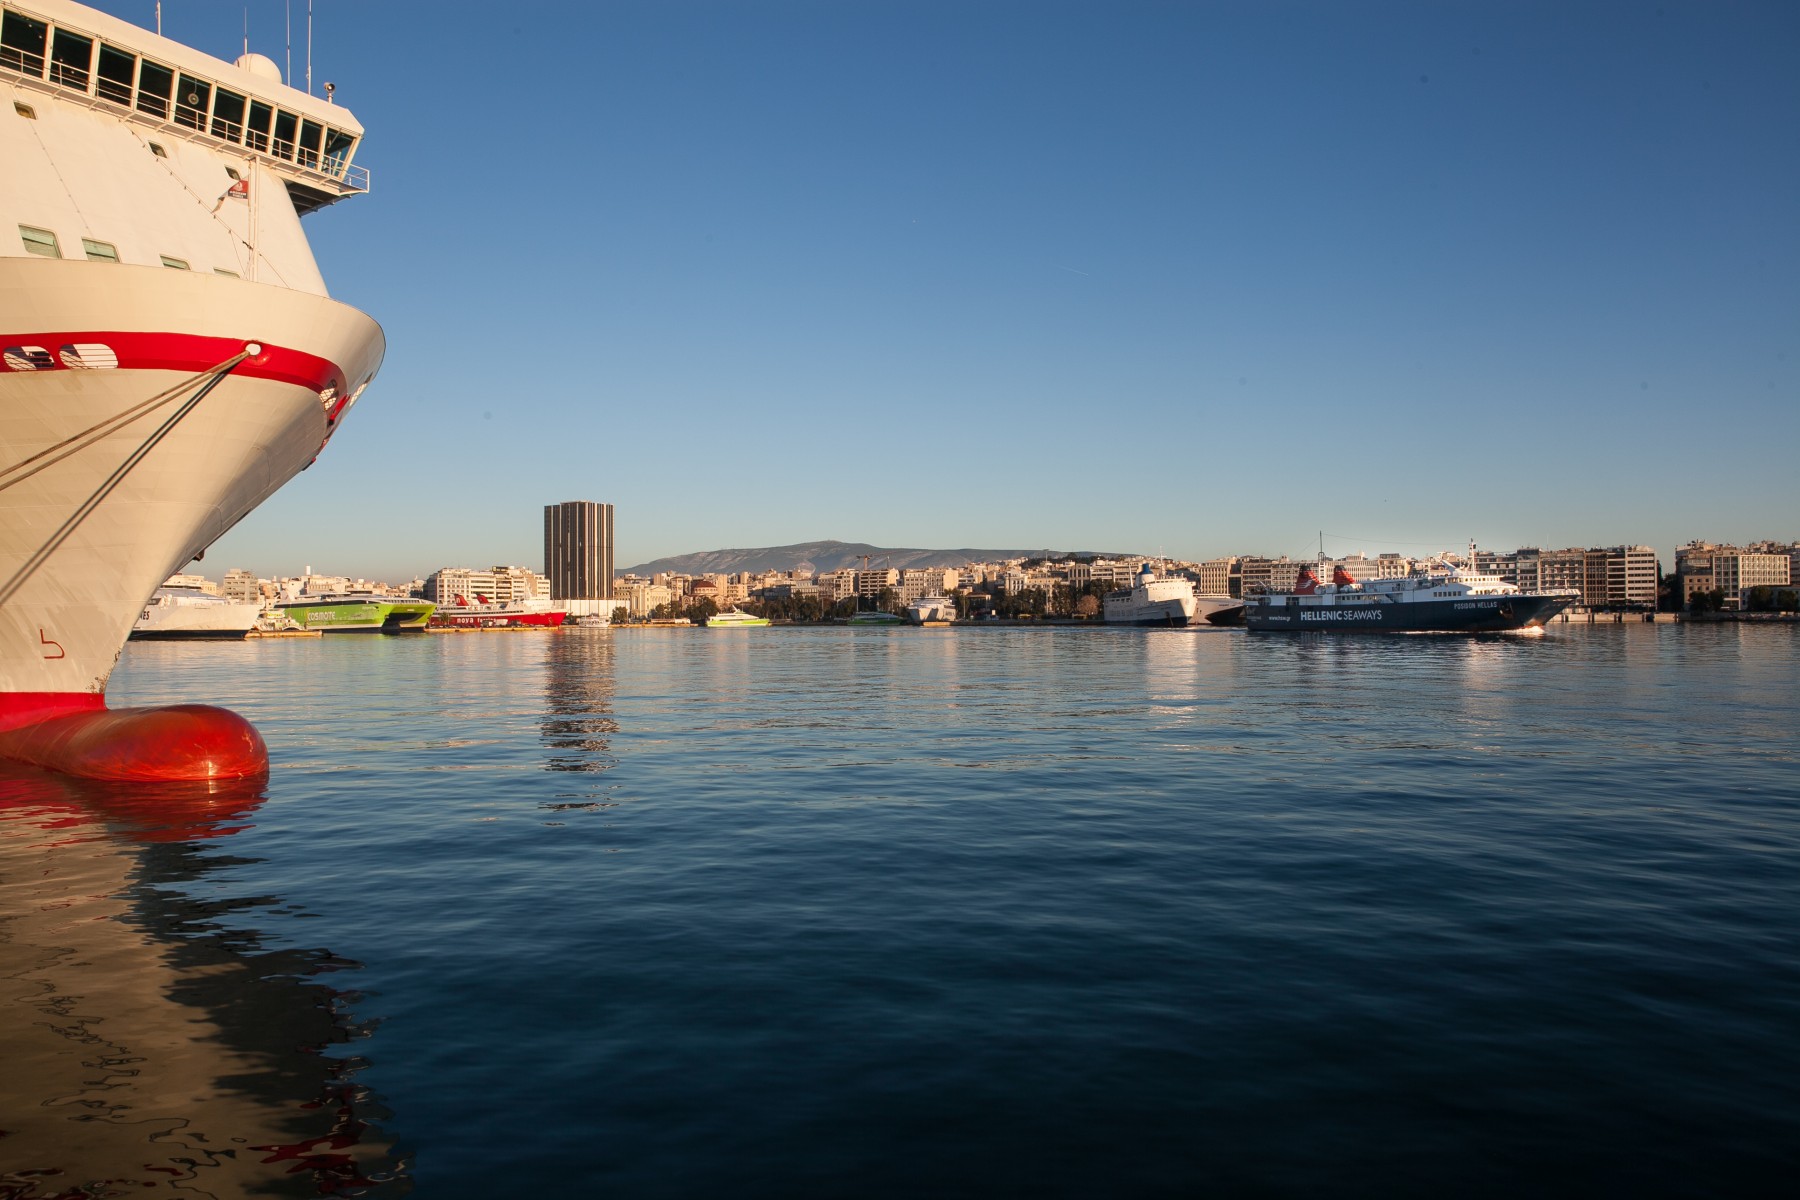 Λιμάνι Πειραιά: Θρίλερ με το πτώμα 44χρονης γυναίκας